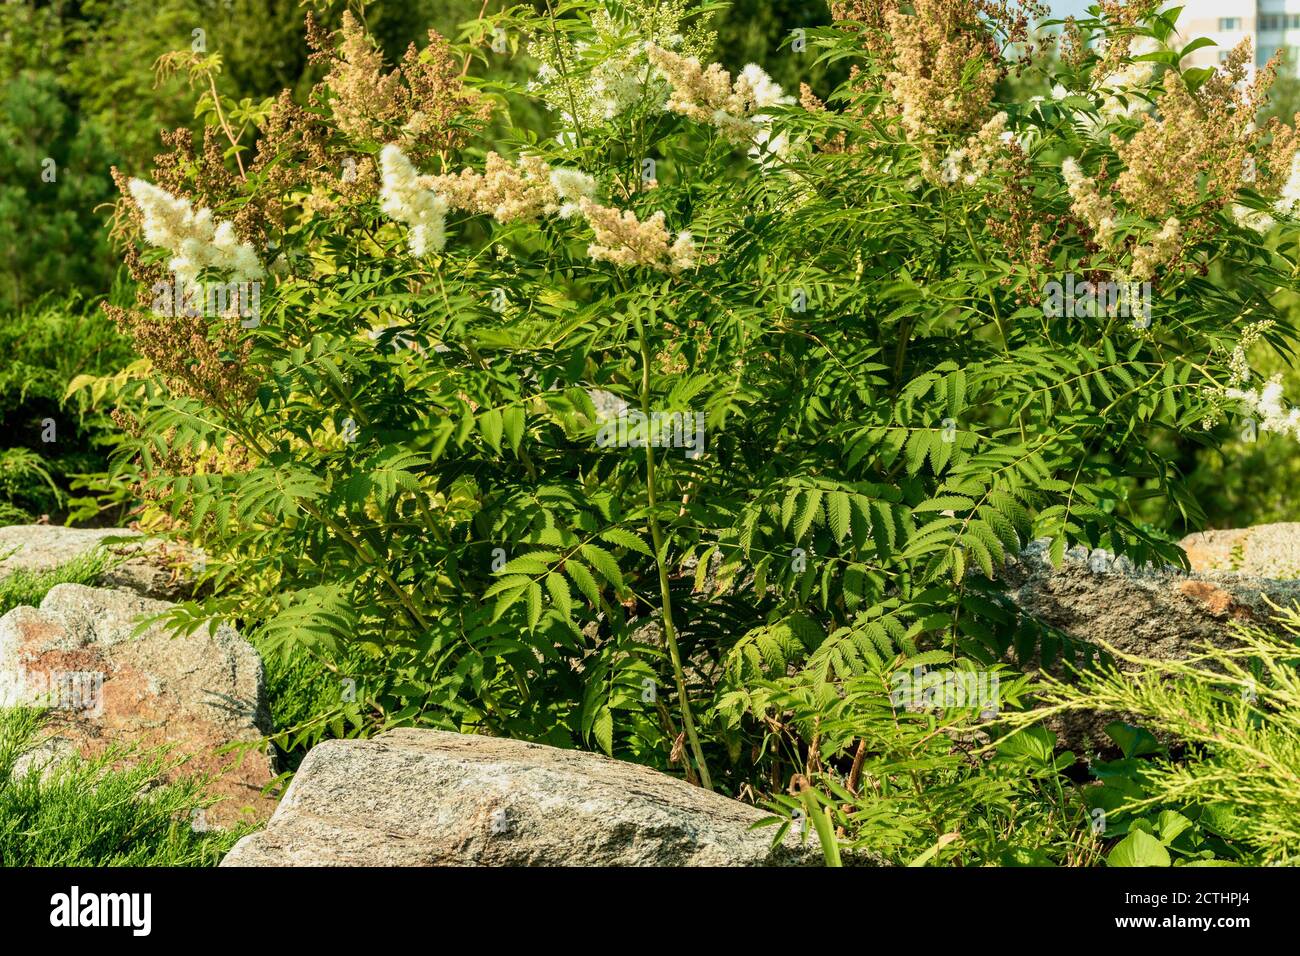 Schöner grüner Busch mit weißen flauschigen Blüten. Stockfoto